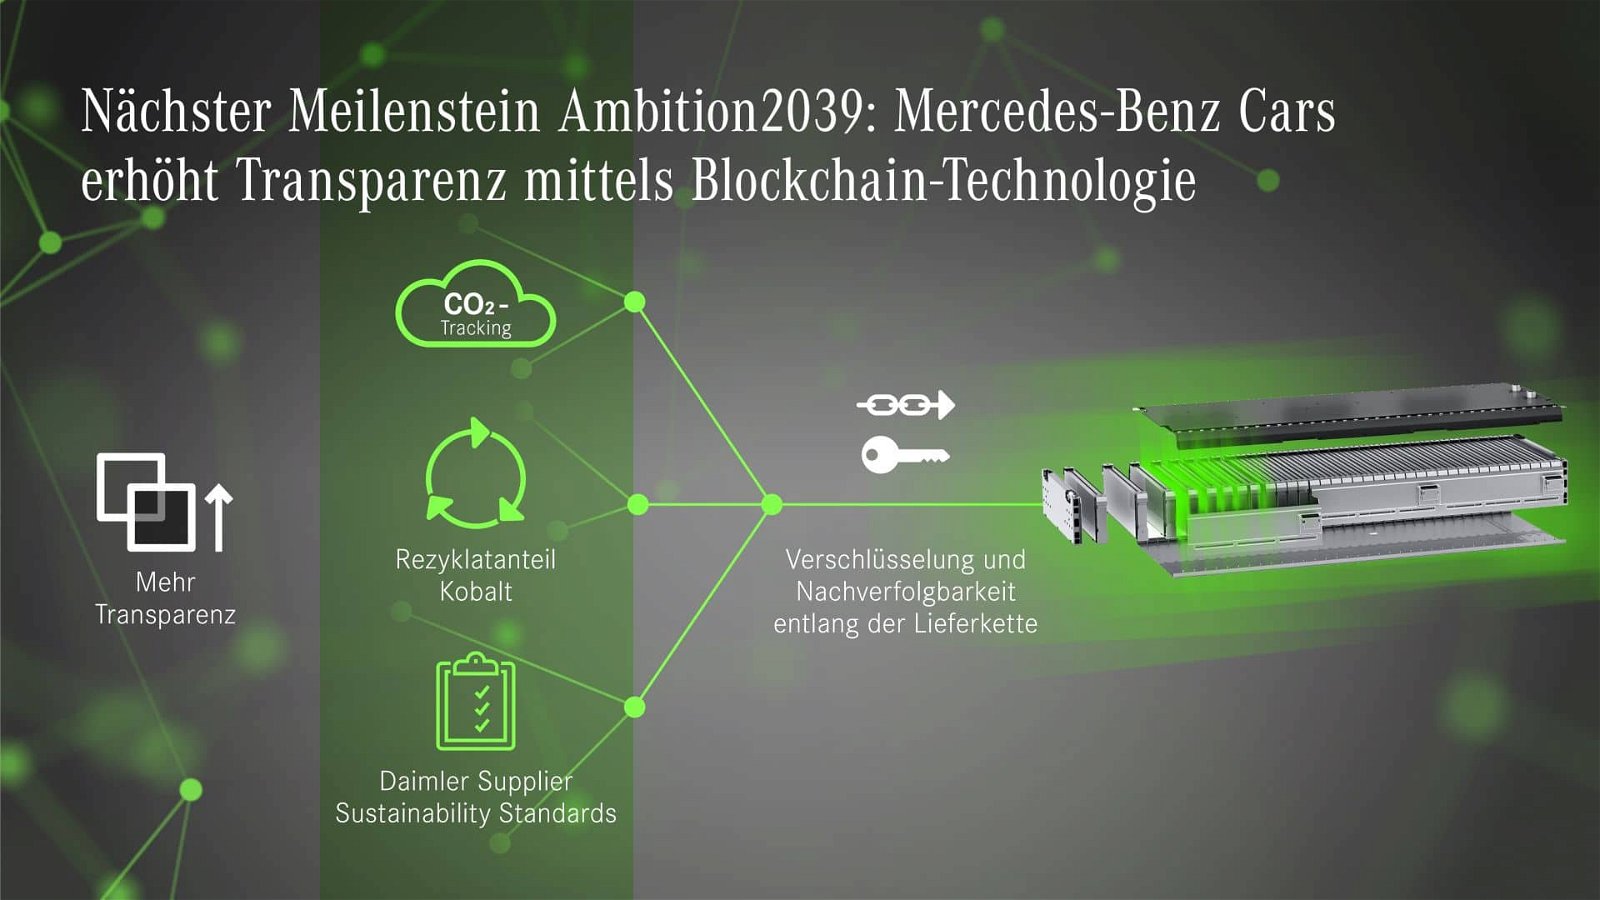 Auf dem Weg zur nachhaltigen Mobilität nimmt Mercedes-Benz verstärkt die Beschaffung in den Fokus: Gemeinsam mit dem Start-up Circulor führt Mercedes-Benz im Rahmen von STARTUP AUTOBAHN ein Pilotprojekt zur Transparenz über CO2-Emissionen in der Kobaltlieferkette durch. Die Projektpartner nutzen die Blockchain-Technologie, um den Ausstoß klimaschädlicher Gase sowie den Anteil an Sekundärmaterial entlang der komplexen Lieferketten von Batteriezellenherstellern nachvollziehbar zu machen. Das Datennetzwerk dokumentiert zusätzlich, ob die Daimler Nachhaltigkeitsstandards in der gesamten Lieferkette weitergegeben werden. Mit der „Ambition2039“ strebt Mercedes-Benz Cars eine CO2-neutrale Pkw-Neuwagenflotte in weniger als 20 Jahren an. Dieser Wandel setzt eine detaillierte Kenntnis aller klimarelevanten Prozesse voraus, die mit der gesamten Wertschöpfungskette der Fahrzeuge einhergehen. Mercedes-Benz schafft daher in einem ersten Schritt Transparenz über die CO2-Emissionen und den Einsatz von Sekundärmaterial in der Lieferkette. Dazu hat das Unternehmen im Rahmen von STARTUP AUTOBAHN ein Pilotprojekt mit einem wichtigen Batteriezellenhersteller und Circulor gestartet, einem auf die Blockchain-Technologie spezialisierten Start-up. Die Projektpartner fokussieren sich dabei zunächst auf Kobalt, das aus Recyclinganlagen in die Lieferkette gelangt. Ein Blockchain-basiertes System bildet den Produktionsfluss der Materialien ab sowie den CO2-Ausstoß, der damit einhergeht. Langfristig verfolgt Mercedes-Benz das Ziel einer Kreislaufwirtschaft und arbeitet daran, Stoffkreisläufe zu schließen. Dazu wird mit der Abbildung des Materialflusses auch der Anteil an recyceltem Material in der Lieferkette erfasst. Das Netzwerk zeigt zudem an, ob die Daimler Nachhaltigkeitsanforderungen in Bezug auf Arbeitsbedingungen, Menschenrechte, Umweltschutz, Sicherheit, Geschäftsethik und Compliance an alle beteiligten Unternehmen weitergegeben werden. Daimler fordert seine direkten Lieferanten dazu auf, diese Standards und Vorgaben einzuhalten und sie auch in ihre vorgelagerten Wertschöpfungsketten hineinzutragen sowie deren Einhaltung zu kontrollieren. Mit dem Blockchain-Pilotprojekt treibt Mercedes-Benz die Nachverfolgbarkeit in der Lieferkette über die unmittelbaren Vertragspartner hinaus an. Markus Schäfer, Mitglied des Vorstands der Daimler AG und Mercedes-Benz AG, verantwortlich für Konzernforschung und Mercedes-Benz Cars Entwicklung, Einkauf und Lieferantenqualität: „Mit Ambition2039 hat sich Mercedes-Benz Cars hohe Ziele gesteckt. Den Weg dorthin können wir nur in enger Zusammenarbeit mit unseren Lieferanten gehen. Der Schlüssel ist Transparenz: Unser Anspruch ist, alle Prozesse transparent und nachvollziehbar zu gestalten. Wir sind der erste Hersteller, der mithilfe der Blockchain-Technologie CO2-Emissionen in der globalen Batteriezellen-Lieferkette abbildet. Damit legen wir den Grundstein für effektive Verbesserungen – für die Umwelt und für unser Geschäft.“ Lieferanten und Partner spielen bei der Umsetzung der nachhaltigen Geschäftsstrategie von Mercedes-Benz eine zentrale Rolle, denn sie leisten einen beachtlichen Beitrag zur Wertschöpfung. Ziel ist es daher, O2-Einsparungen sowie einen umweltverträglichen Umgang mit Ressourcen auch in der Lieferkette stärker zu berücksichtigen. Parallel zur Erfassung der Emissionsdaten führt Mercedes-Benz Workshops mit Lieferanten durch, um effektive Maßnahmen zur Reduktion von CO2-Emissionen zu identifizieren. Der Fokus des Engagements liegt zunächst auf Materialien, deren Herstellung besonders CO2-intensiv ist. Dazu zählen neben Batteriezellen auch Stahl und Aluminium. Als ersten Meilenstein wird Mercedes-Benz im Rahmen einer Nachhaltigkeitspartnerschaft mit einem Batteriezellenlieferanten erstmals Batteriezellen aus CO2-neutraler Produktion beziehen. Blockchain in der Lieferkette Die Blockchain-Technologie bietet für die Dokumentation von Produkt- und Vertragsdaten zahlreiche Vorteile. Sie verbindet digitale Datensätze durch Kodierungen („Kryptographie“) und lässt sich nicht unbemerkt verändern. Alle Teilnehmer der Lieferkette können die Integration, Weitergabe und Bestätigung von Informationen jederzeit nachvollziehen. Zugleich bleiben vertrauliche Informationen geschützt. Daraus ergibt sich eine besondere Relevanz für komplexe und hochdynamische globale Lieferketten, wie dies z.B. in der Batteriezellenherstellung der Fall ist. Mercedes-Benz knüpft dabei an Erfahrungen aus früheren Initiativen an. Bereits im vergangenen Jahr hat der Autohersteller einen Blockchain-Prototyp für die Lieferkette entwickeln lassen. Ziel war die Dokumentation von Verträgen durchgängig und transparent über alle Stufen hinweg. Die dabei gesammelten Erkenntnisse fließen in das neue Pilotprojekt mit ein. Ü